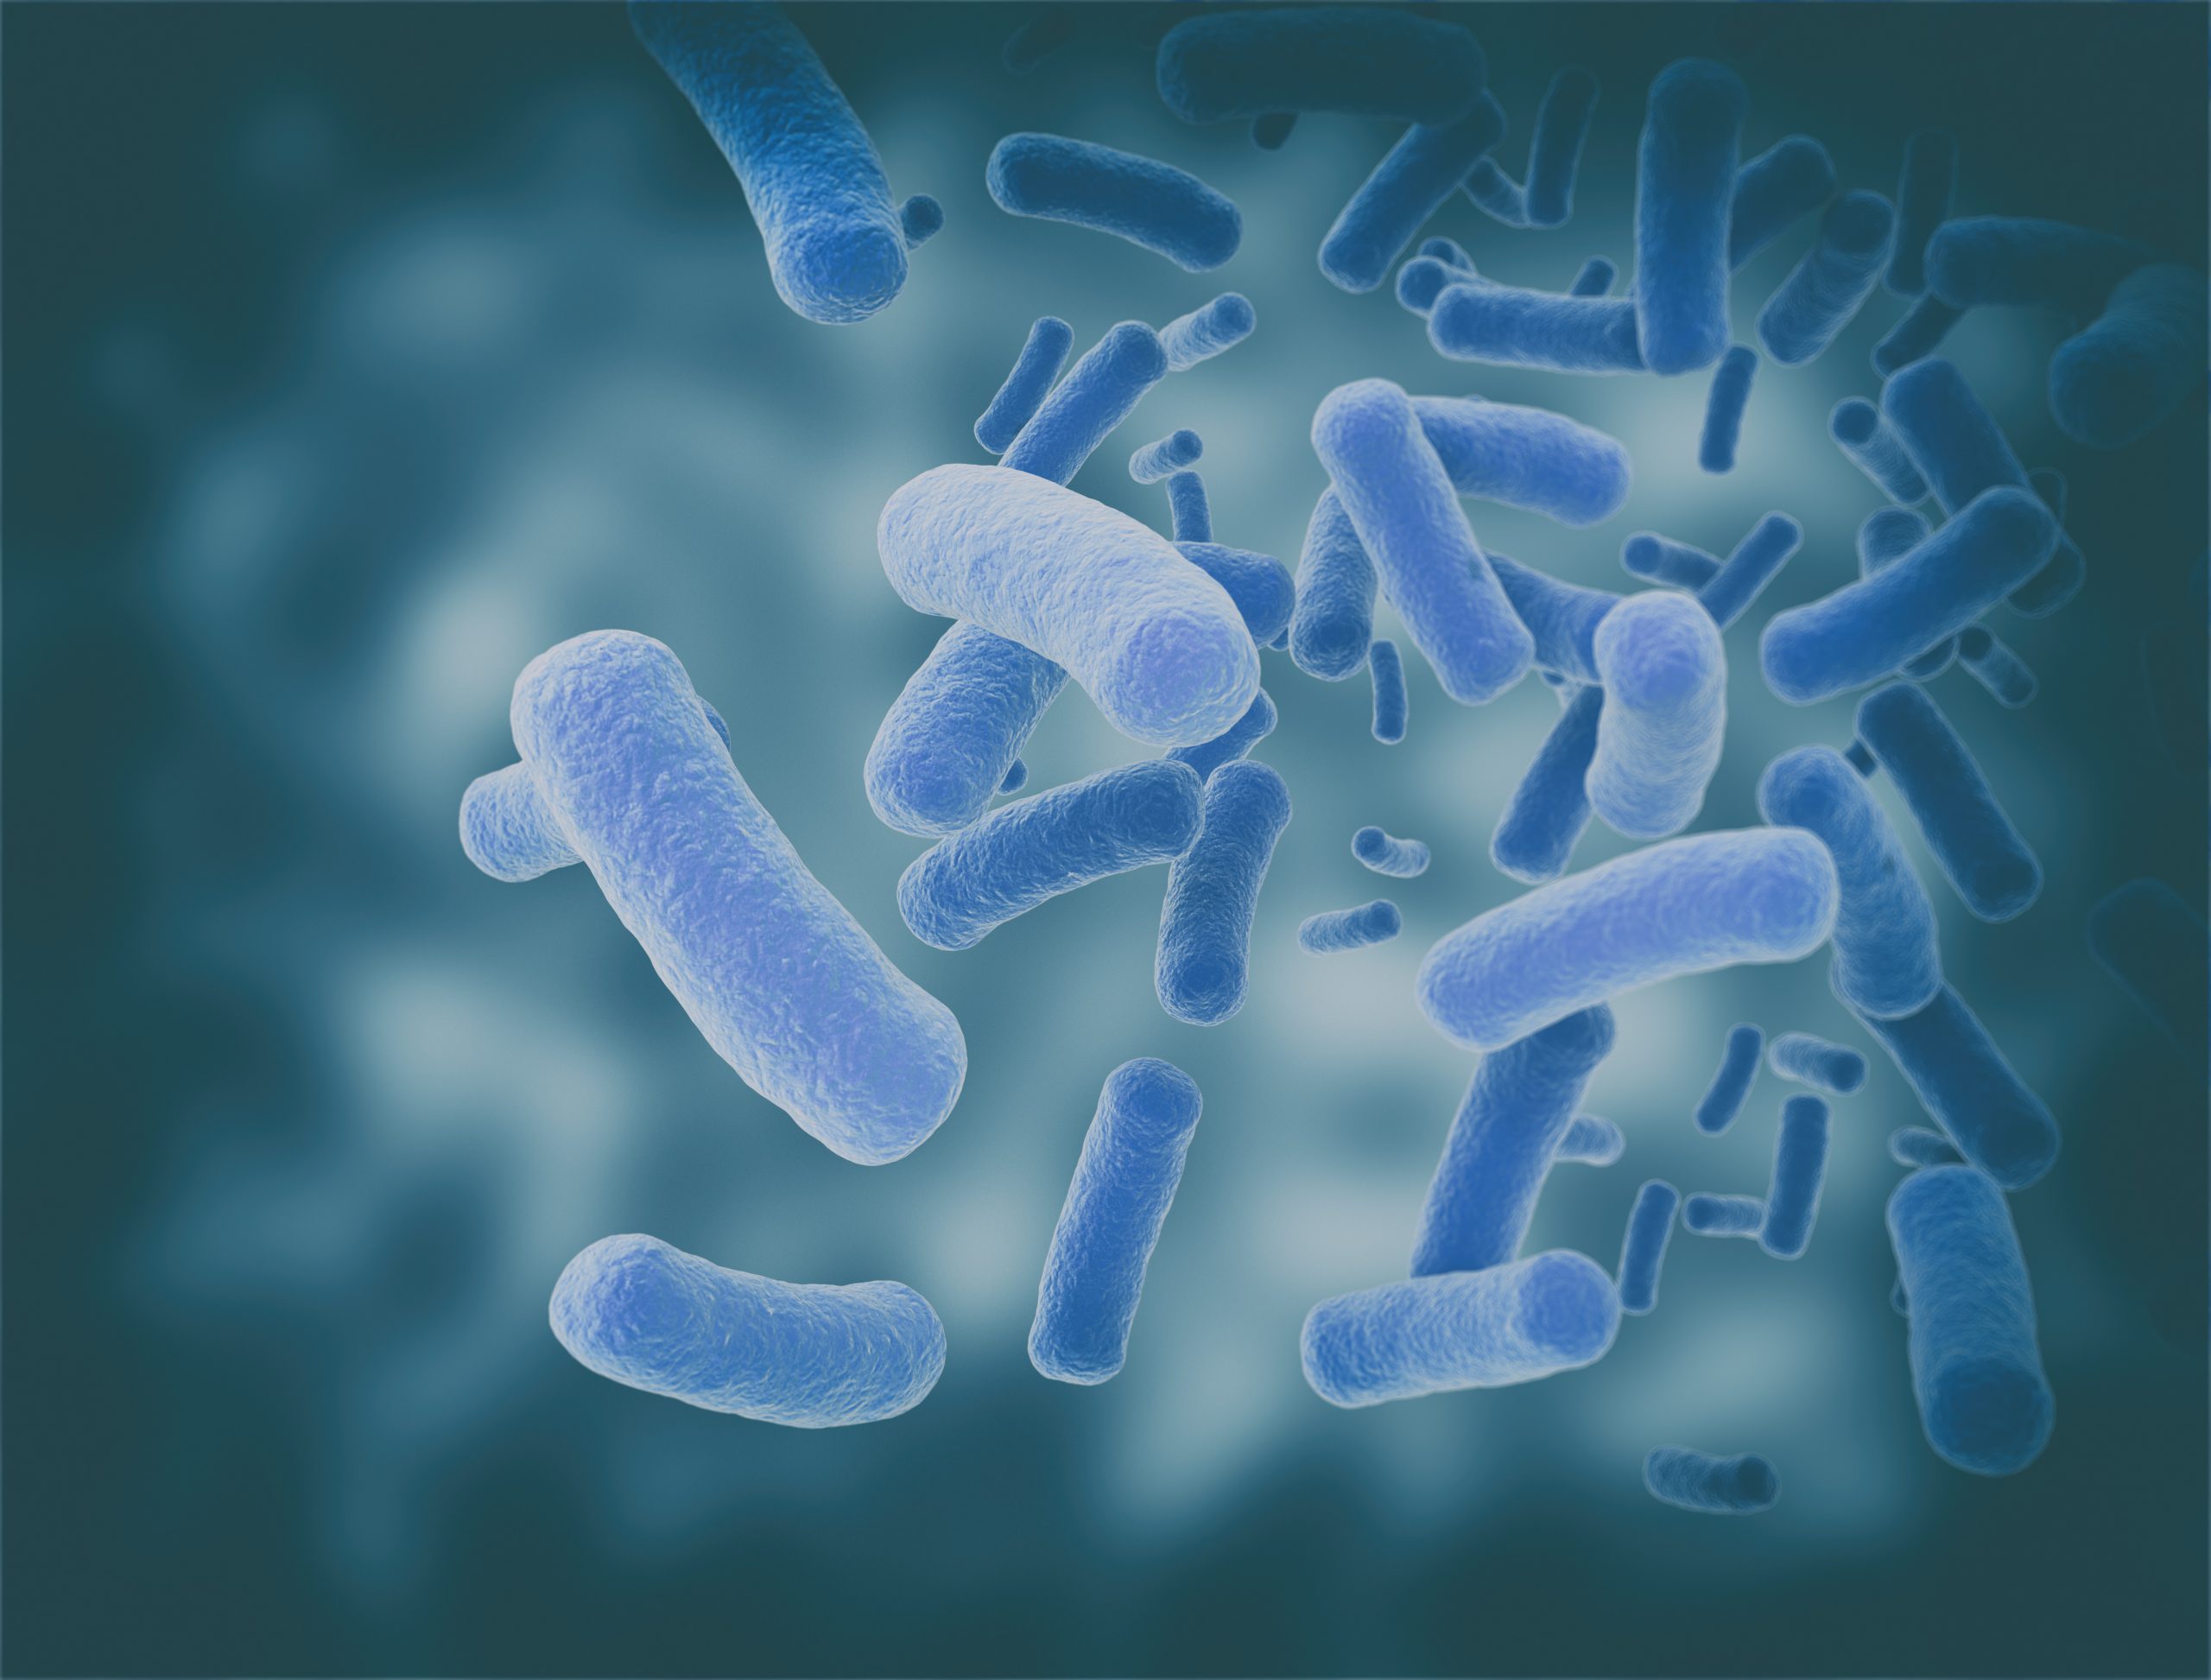 Bacillus subtilis - chế phẩm sinh học người nuôi thủy sản nên dùng 1 lần